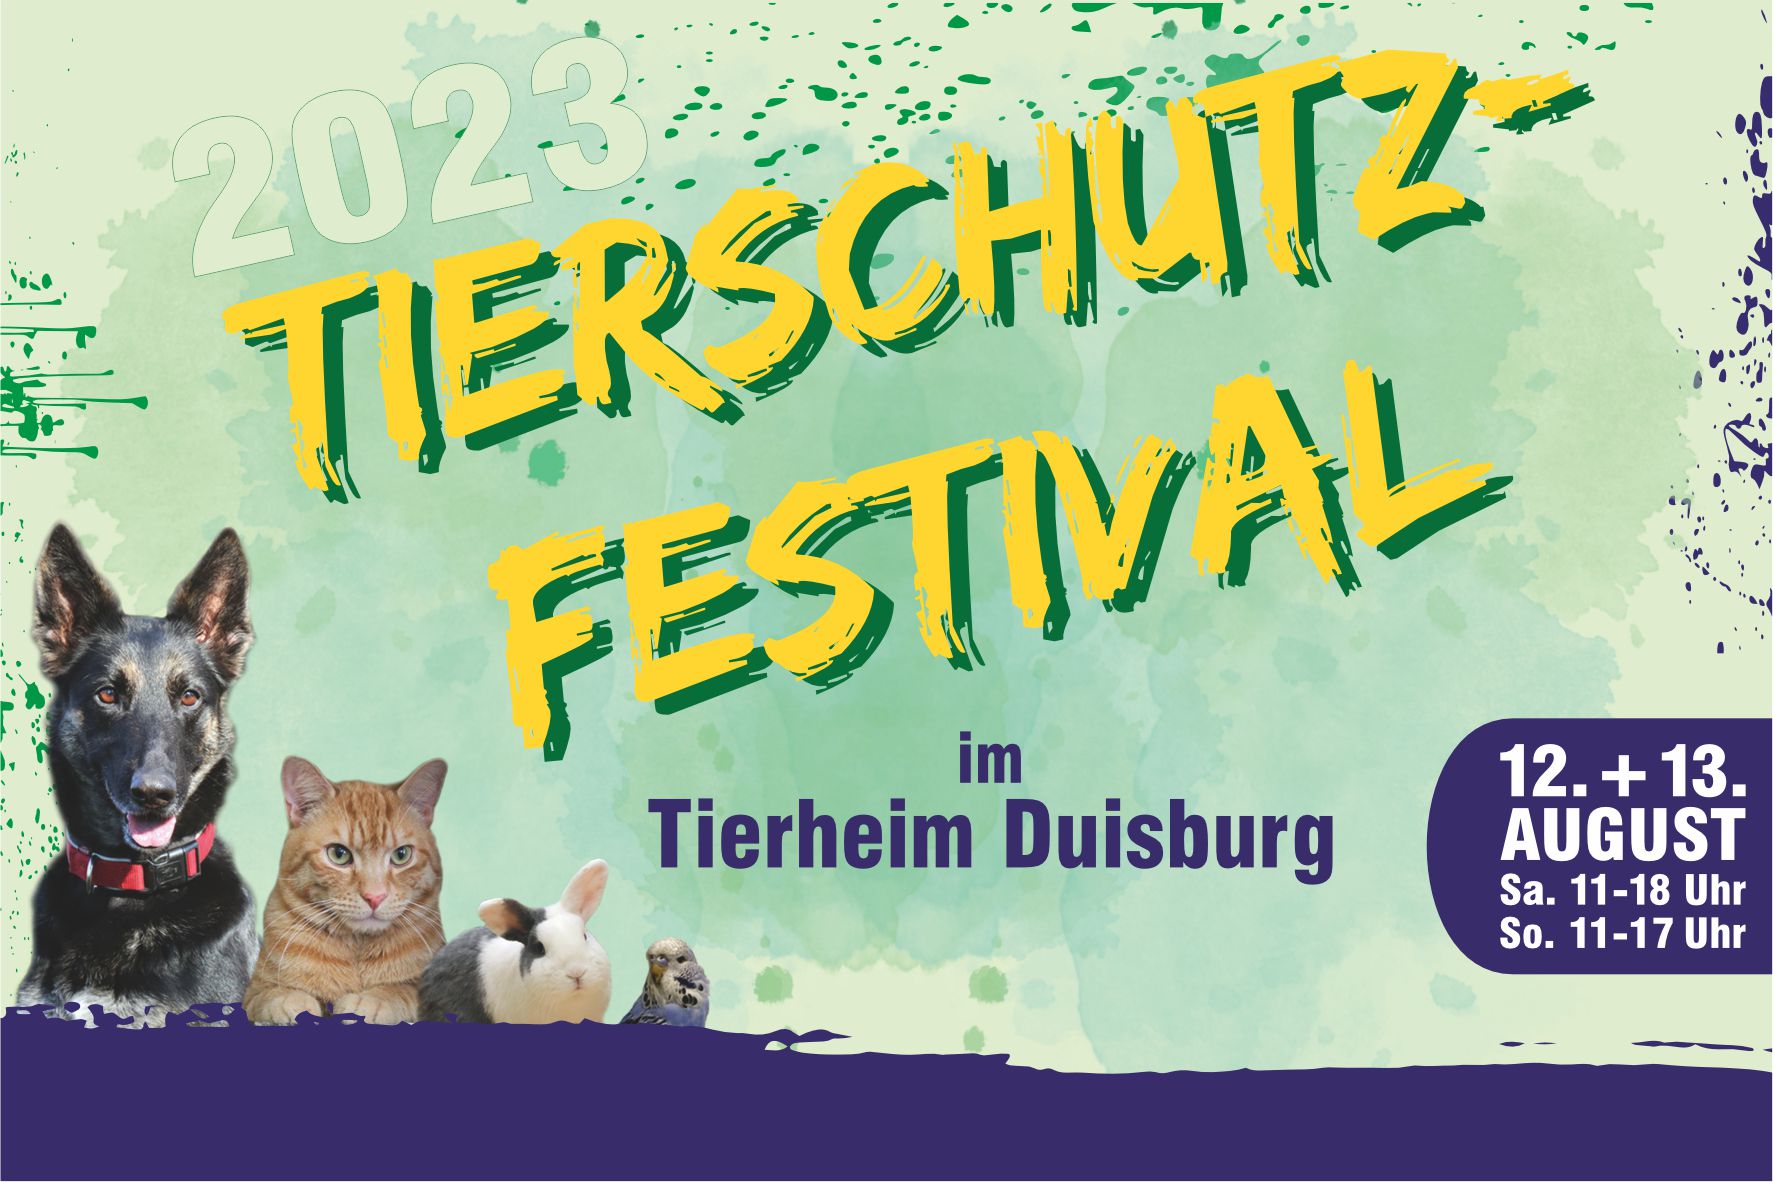 Tierschutz-Festival im Tierheim Duisburg